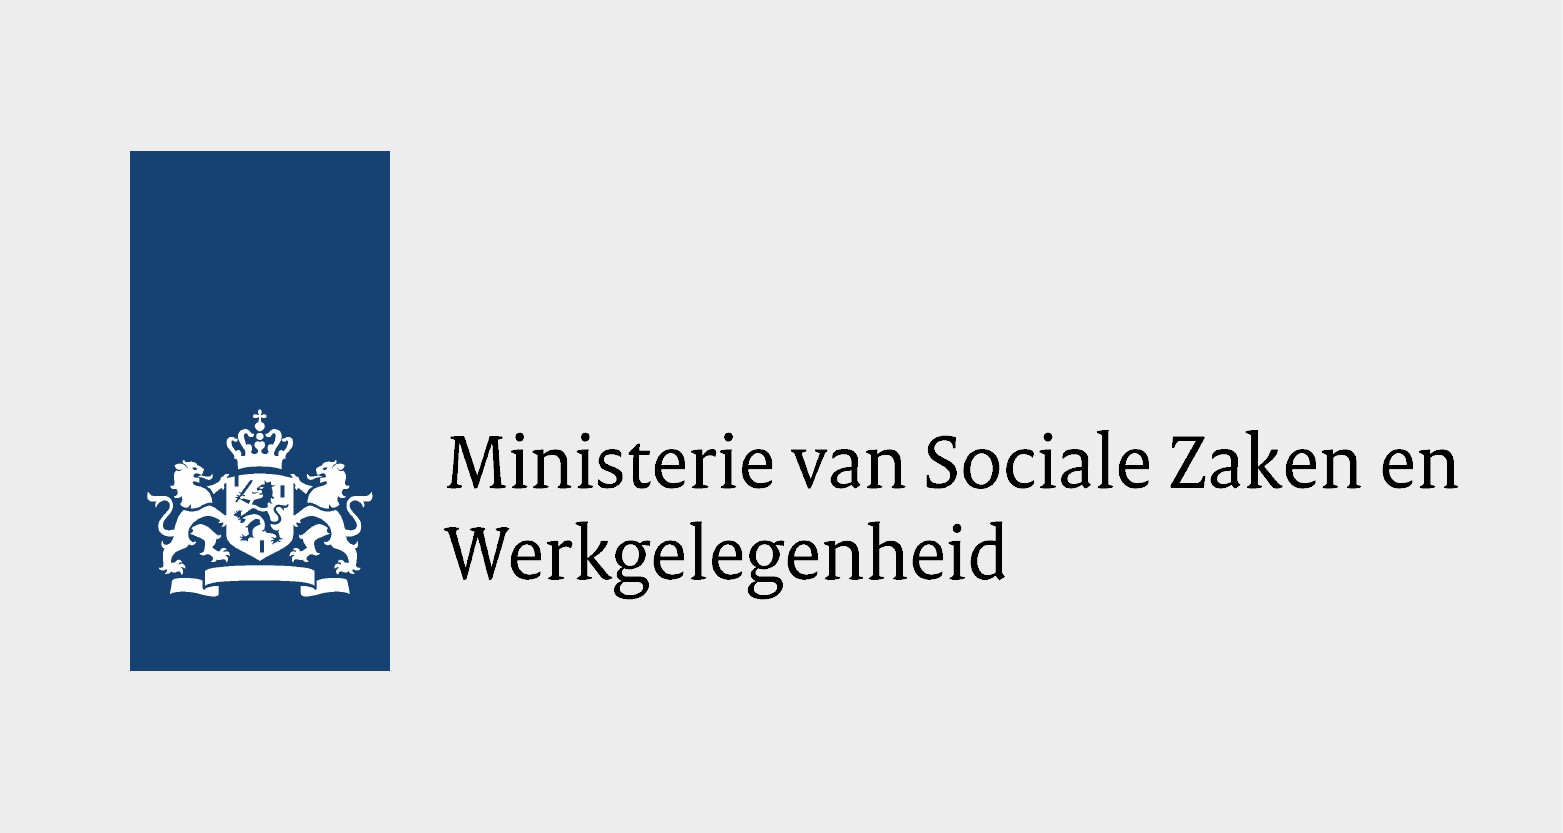 Ministerie van Sociale zaken en werkgelegenheid